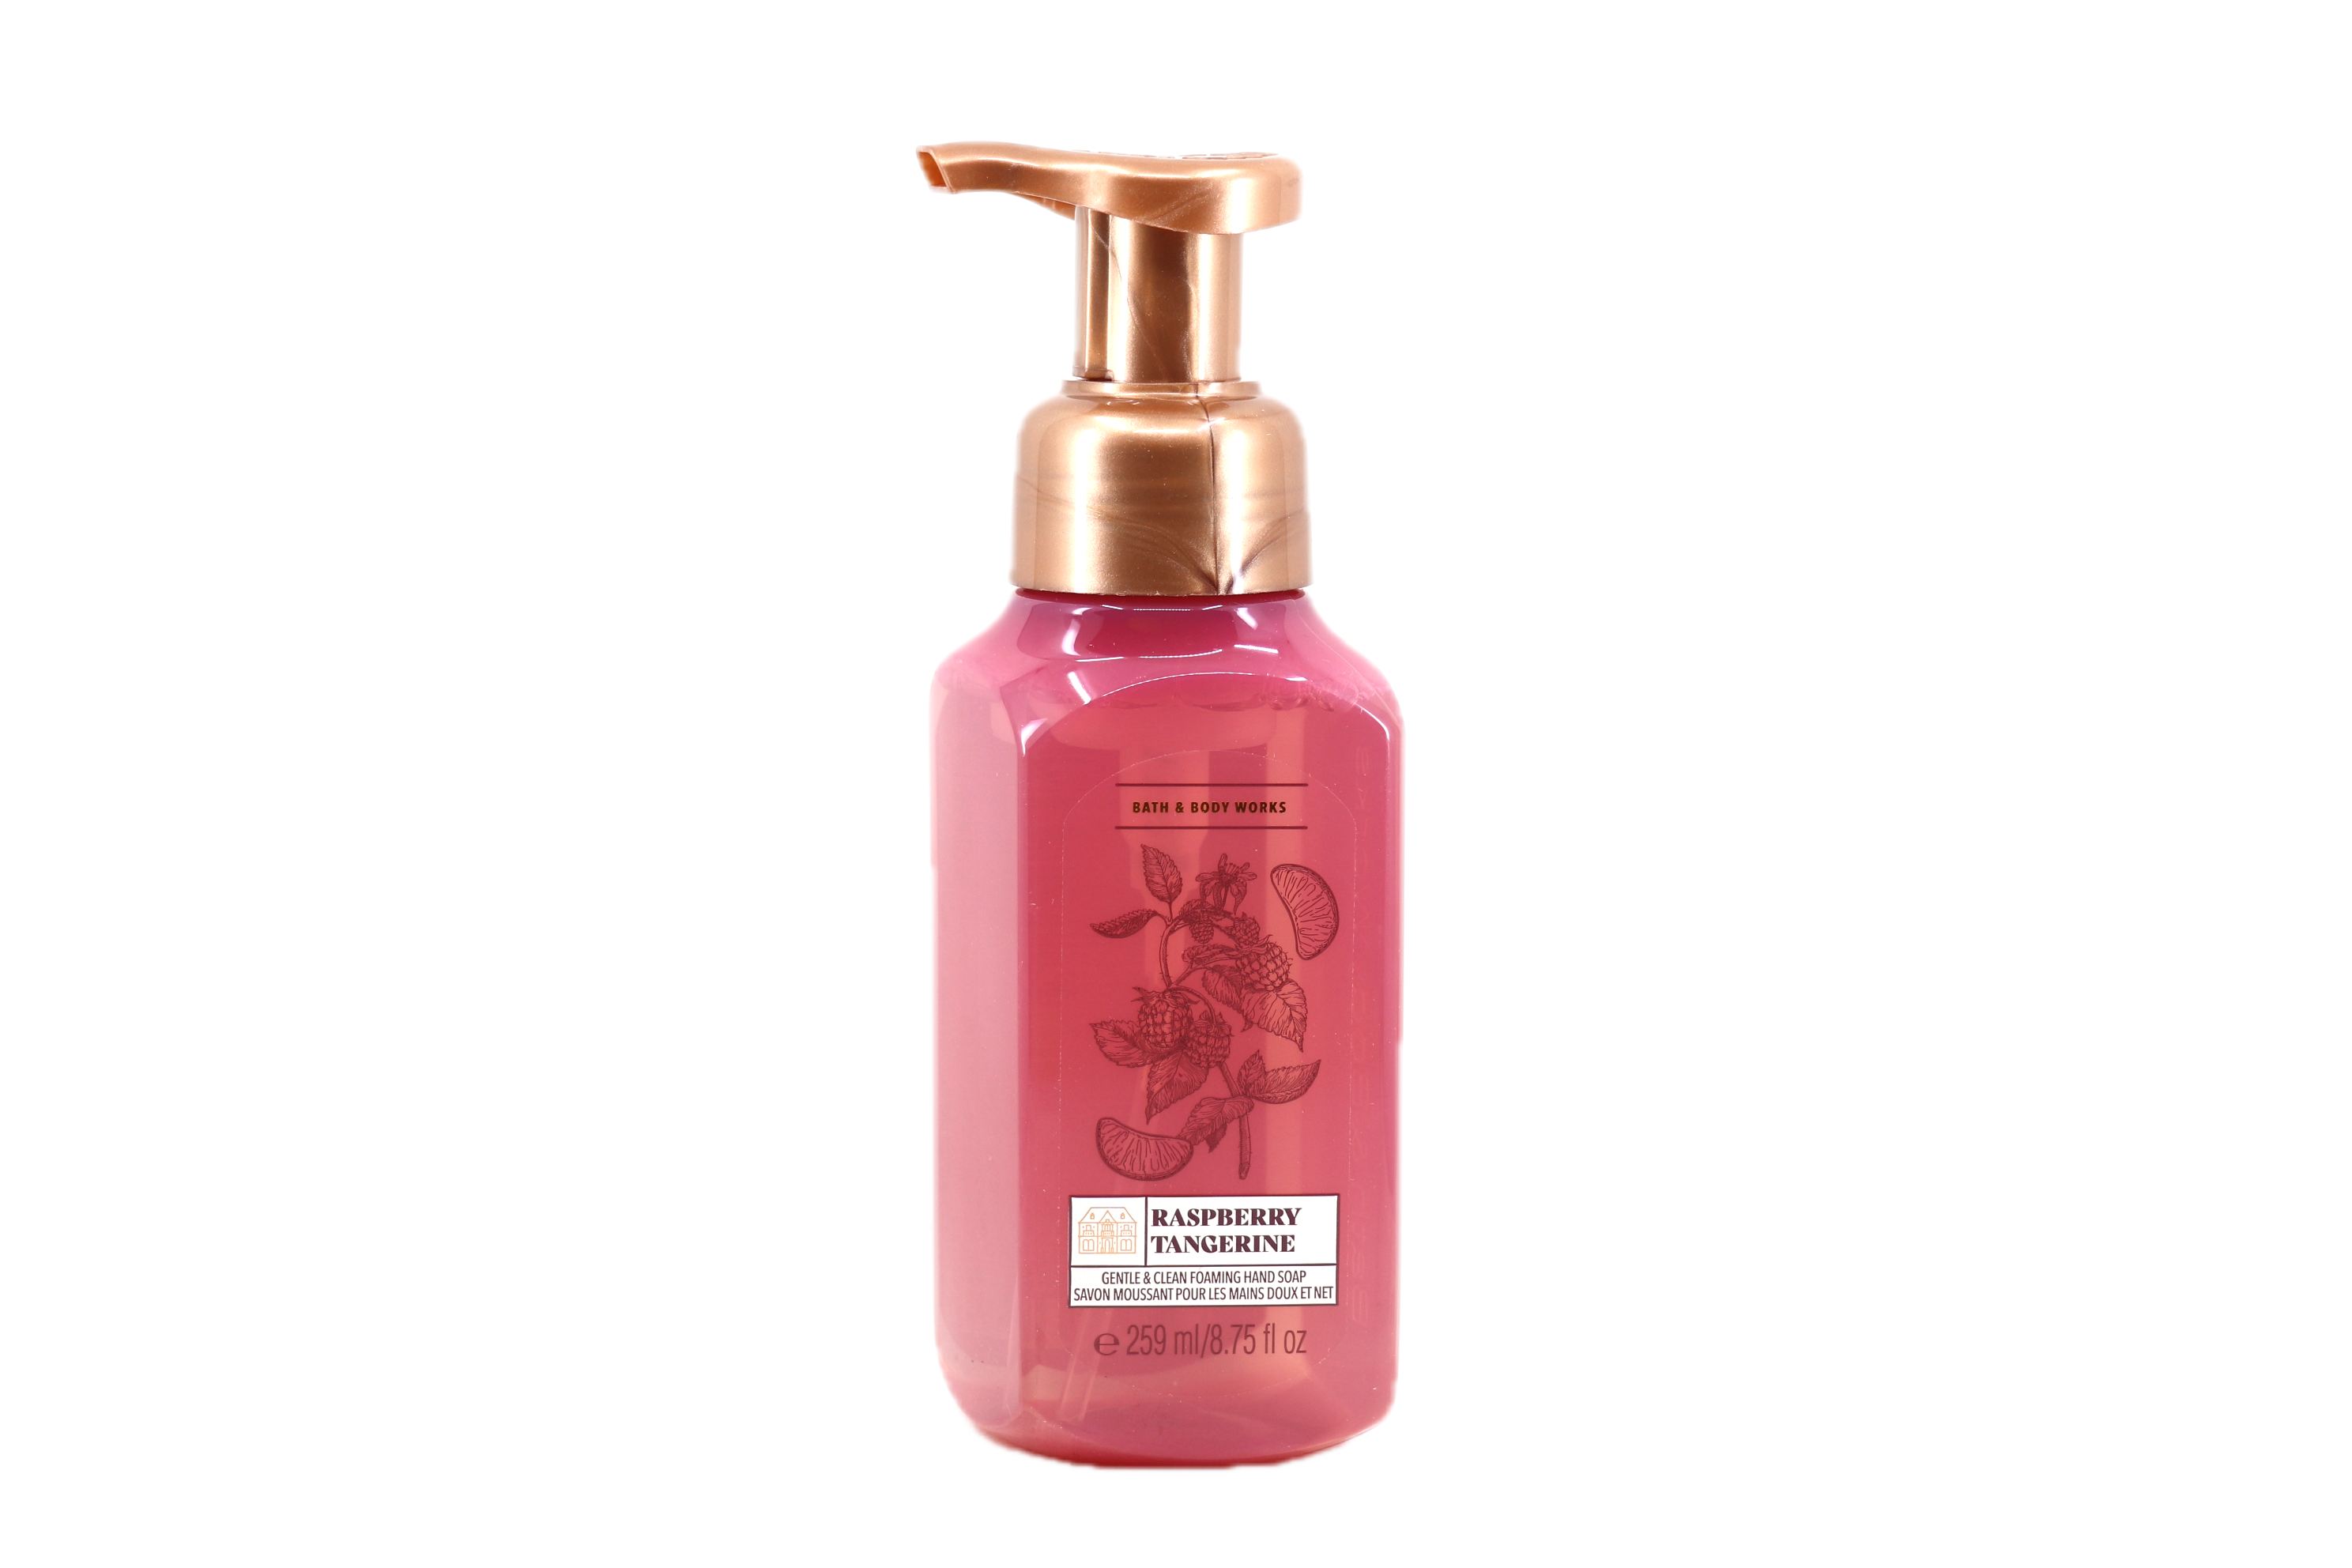 Bath & Body Works Raspberry Tangerine Gentle Foaming Hand Soap